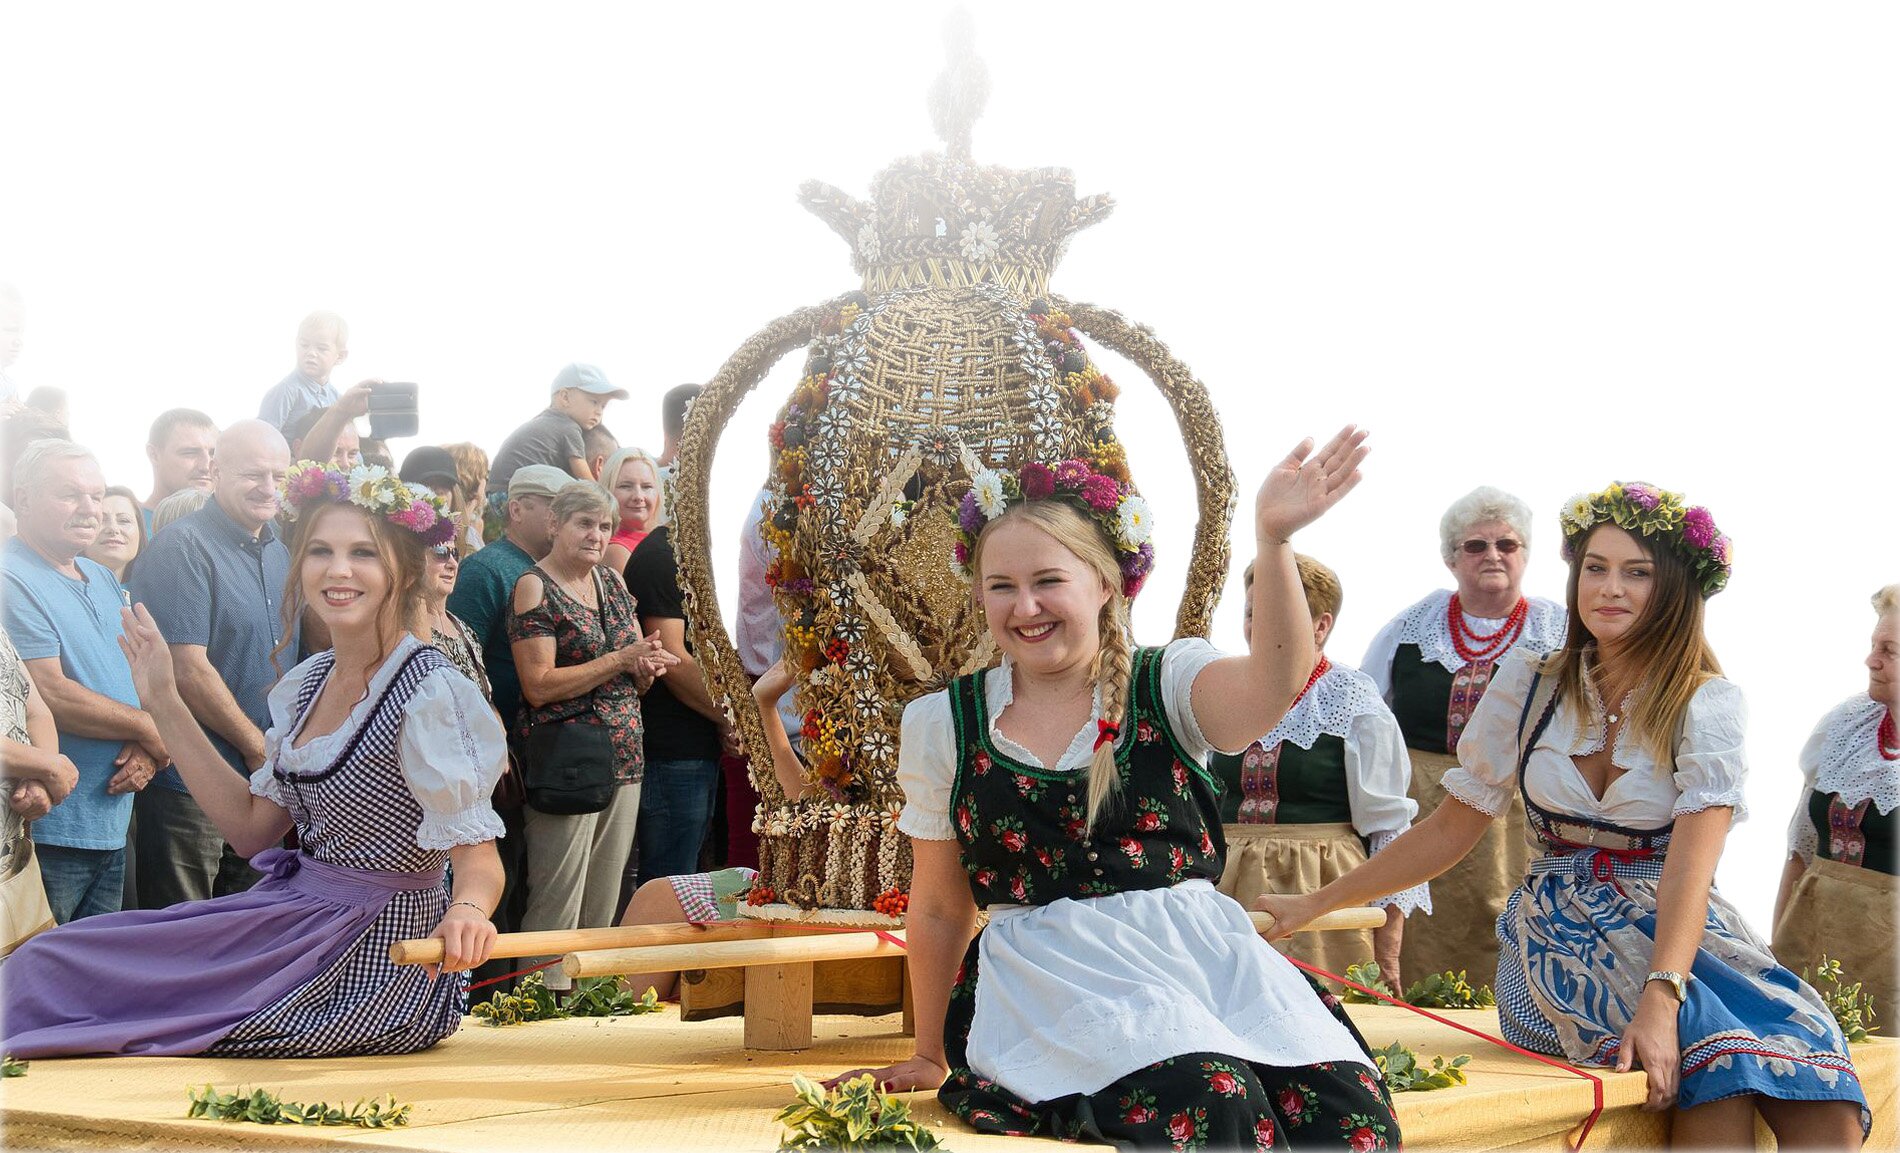 Zdjęcie przedstawia moment przykładowego wydarzenie z elementami lokalnego folkloru. Na zdjęciu widać kobiety ubrane w stroje ludowe siedzące na drewnianej platformie oraz ludzi obserwujących paradę. Pośrodku platformy stoi słomiana figura.